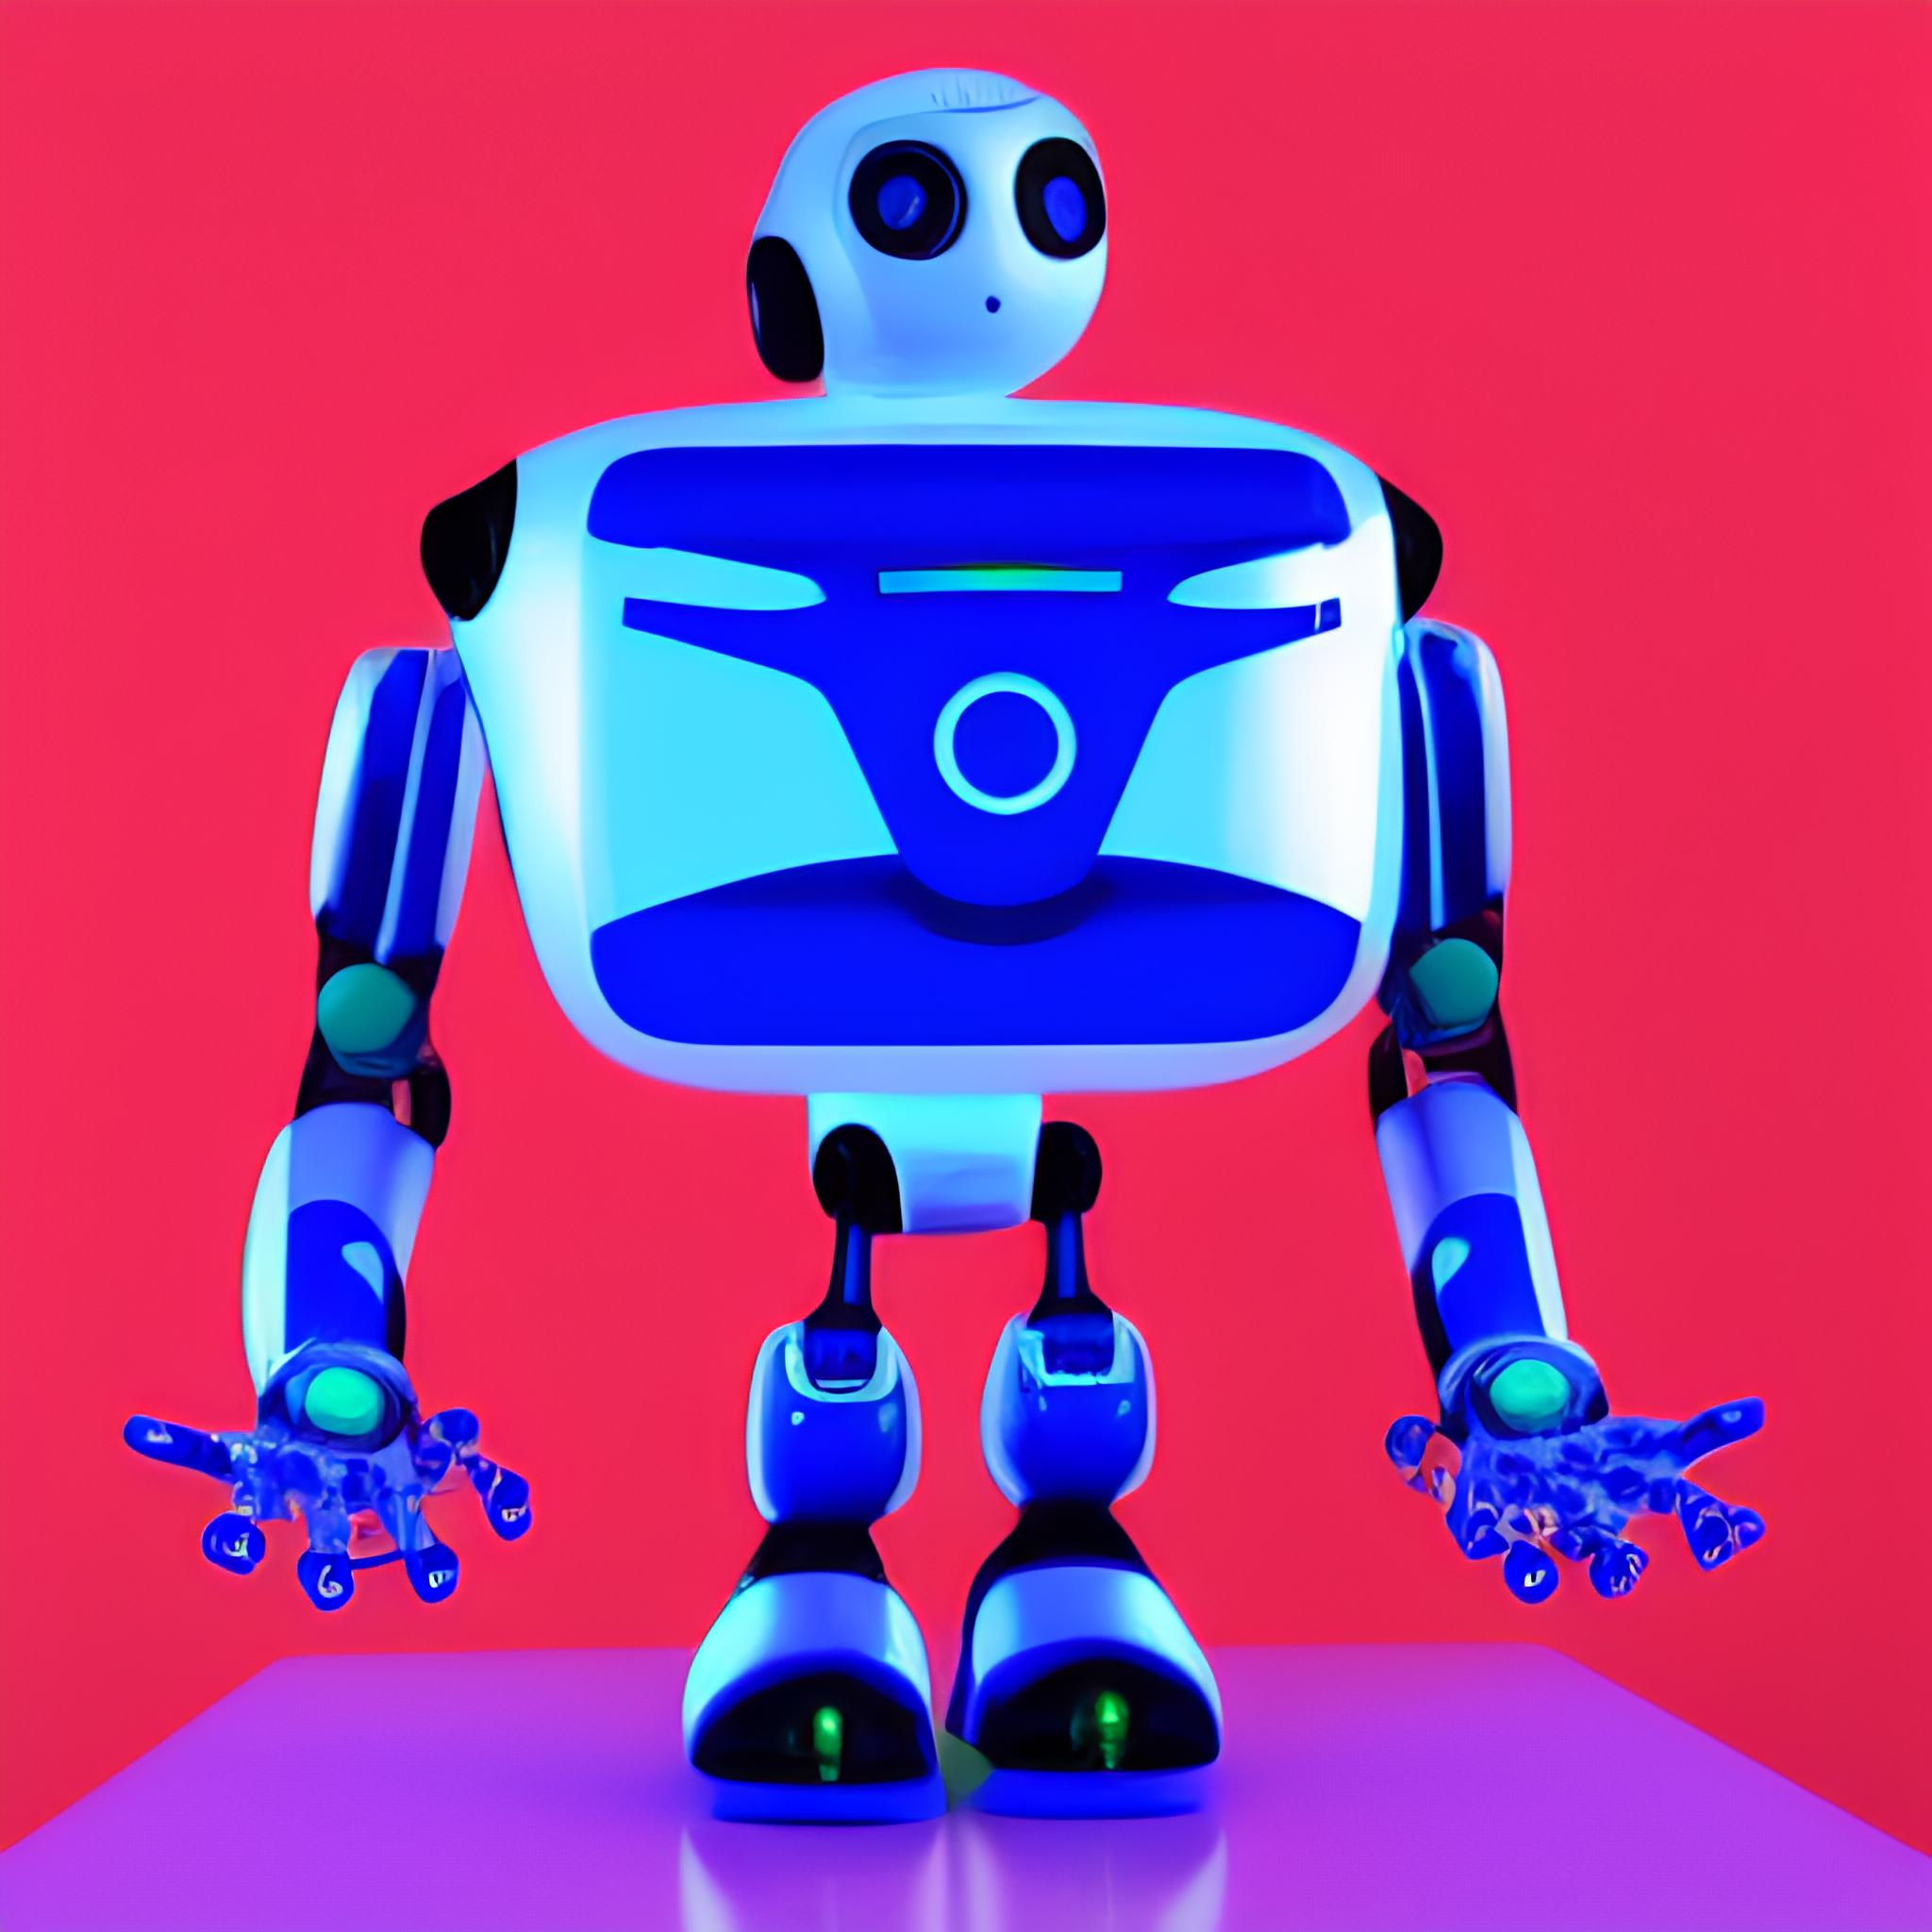 Вы сейчас просматриваете Роботы: Сотрудничество, вызовы и будущее сосуществования